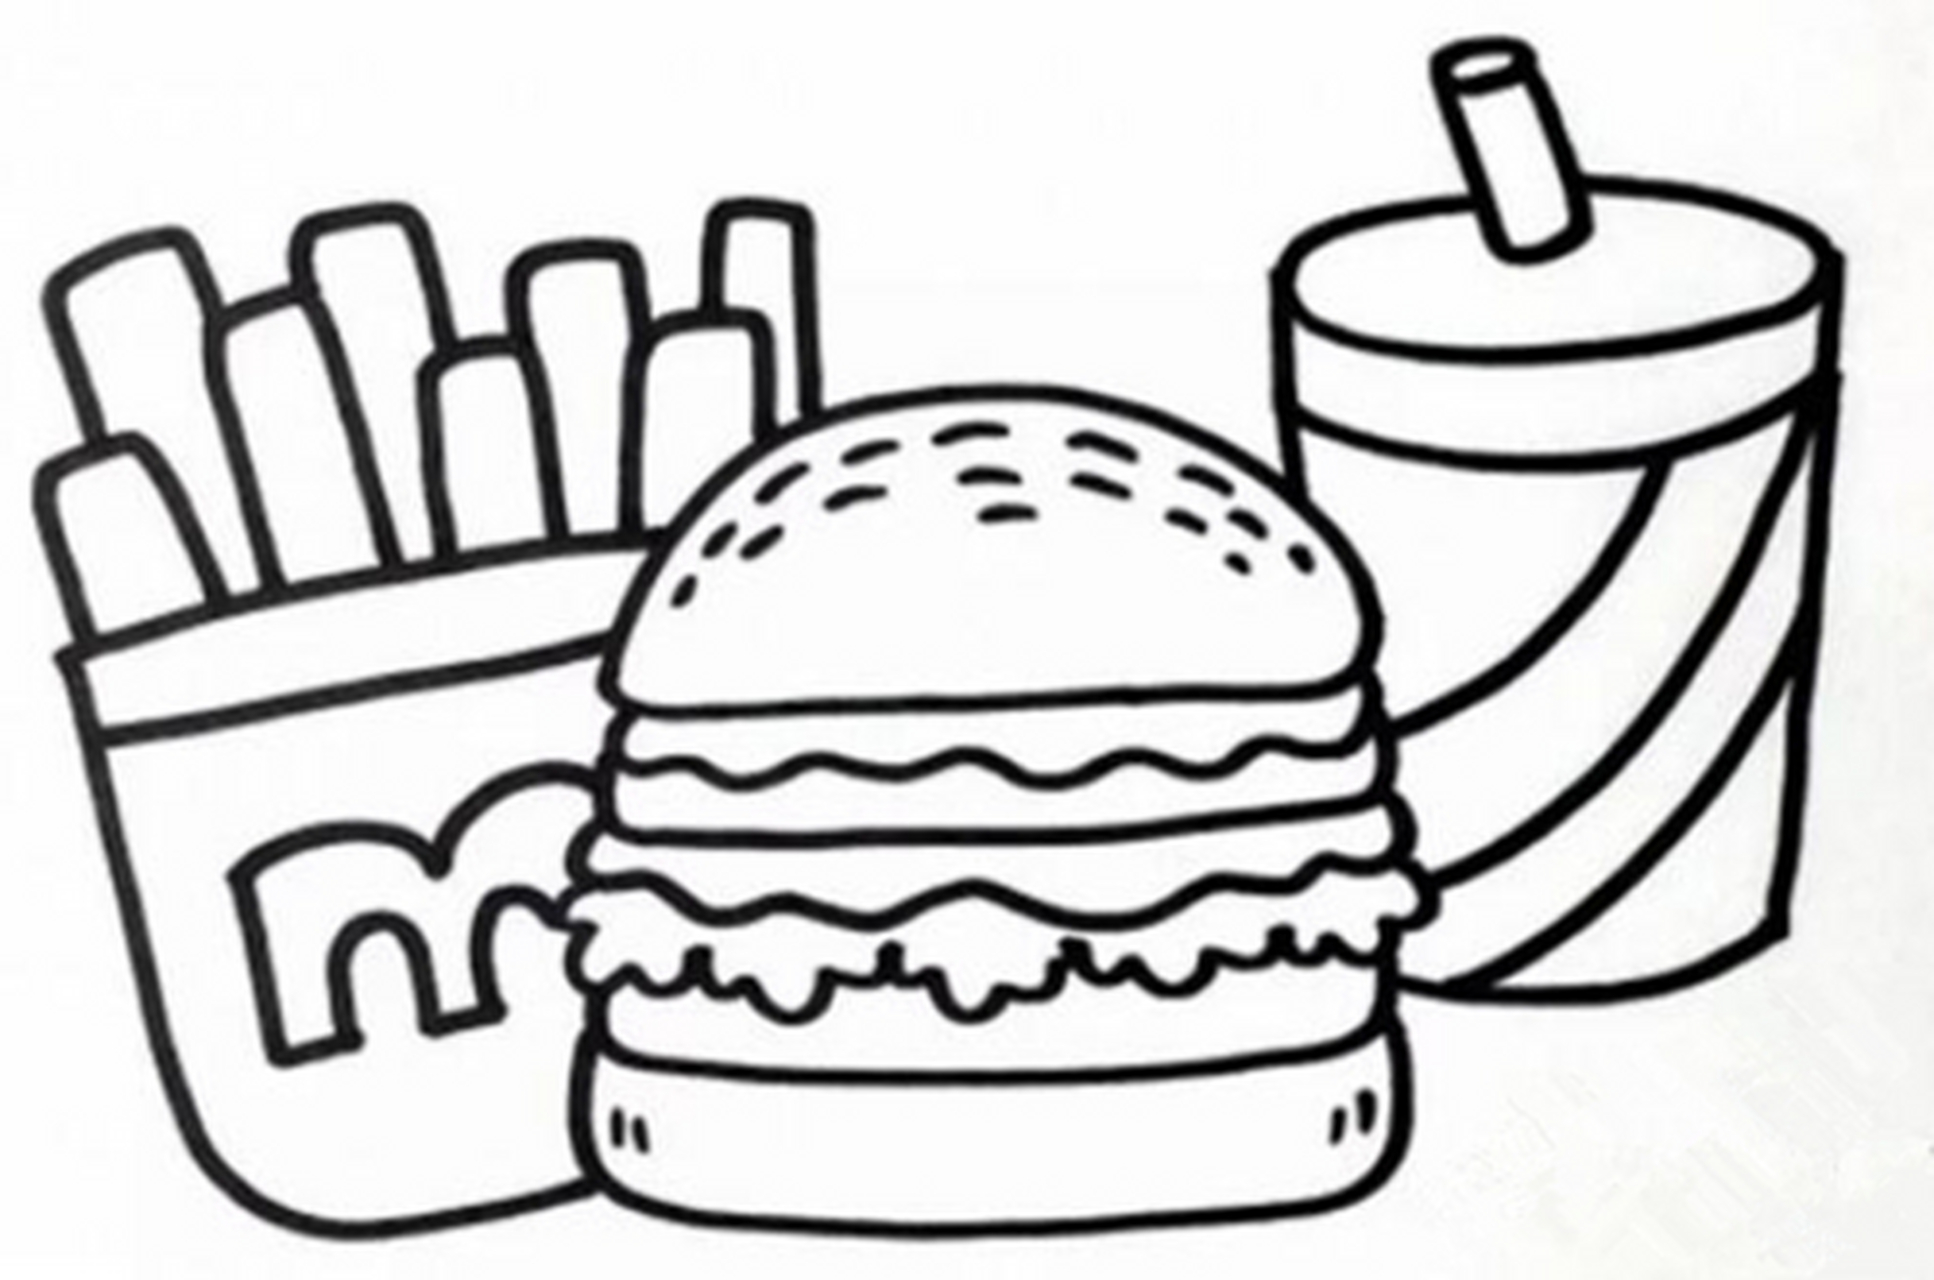 薯条可乐汉堡简笔画图片